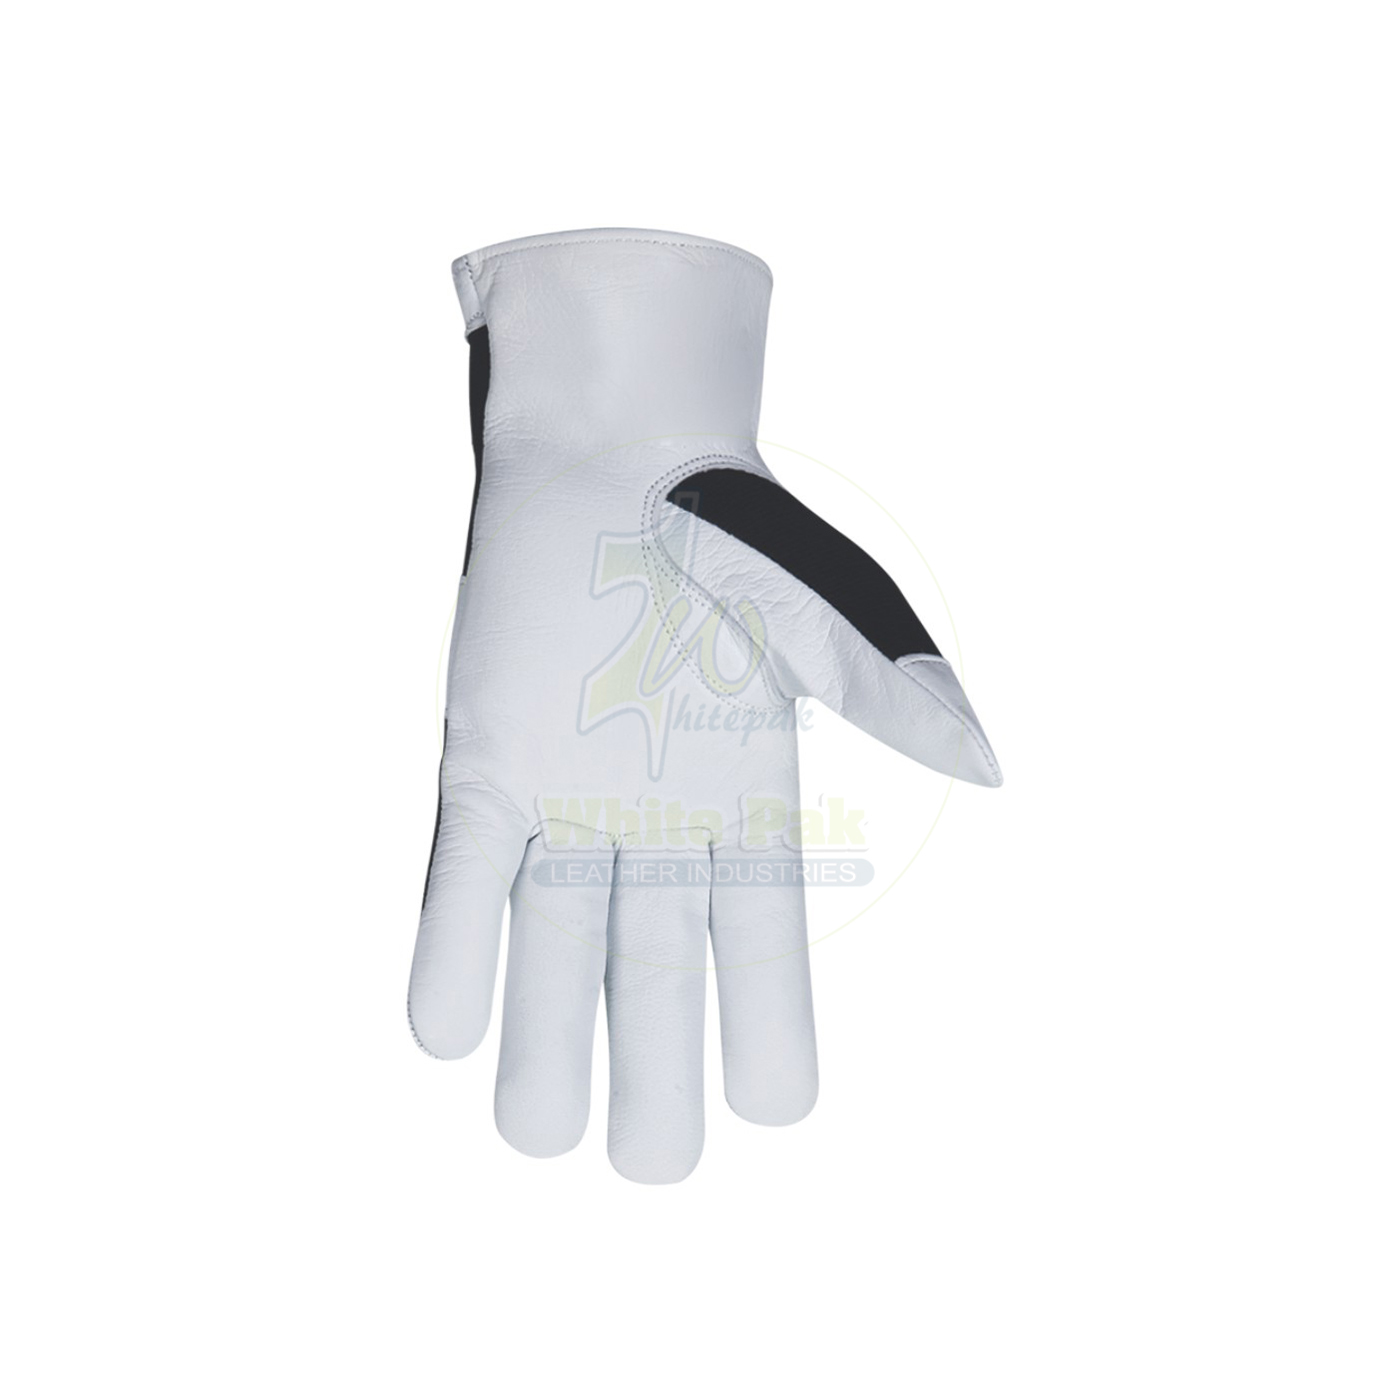 Black Assembling Gloves